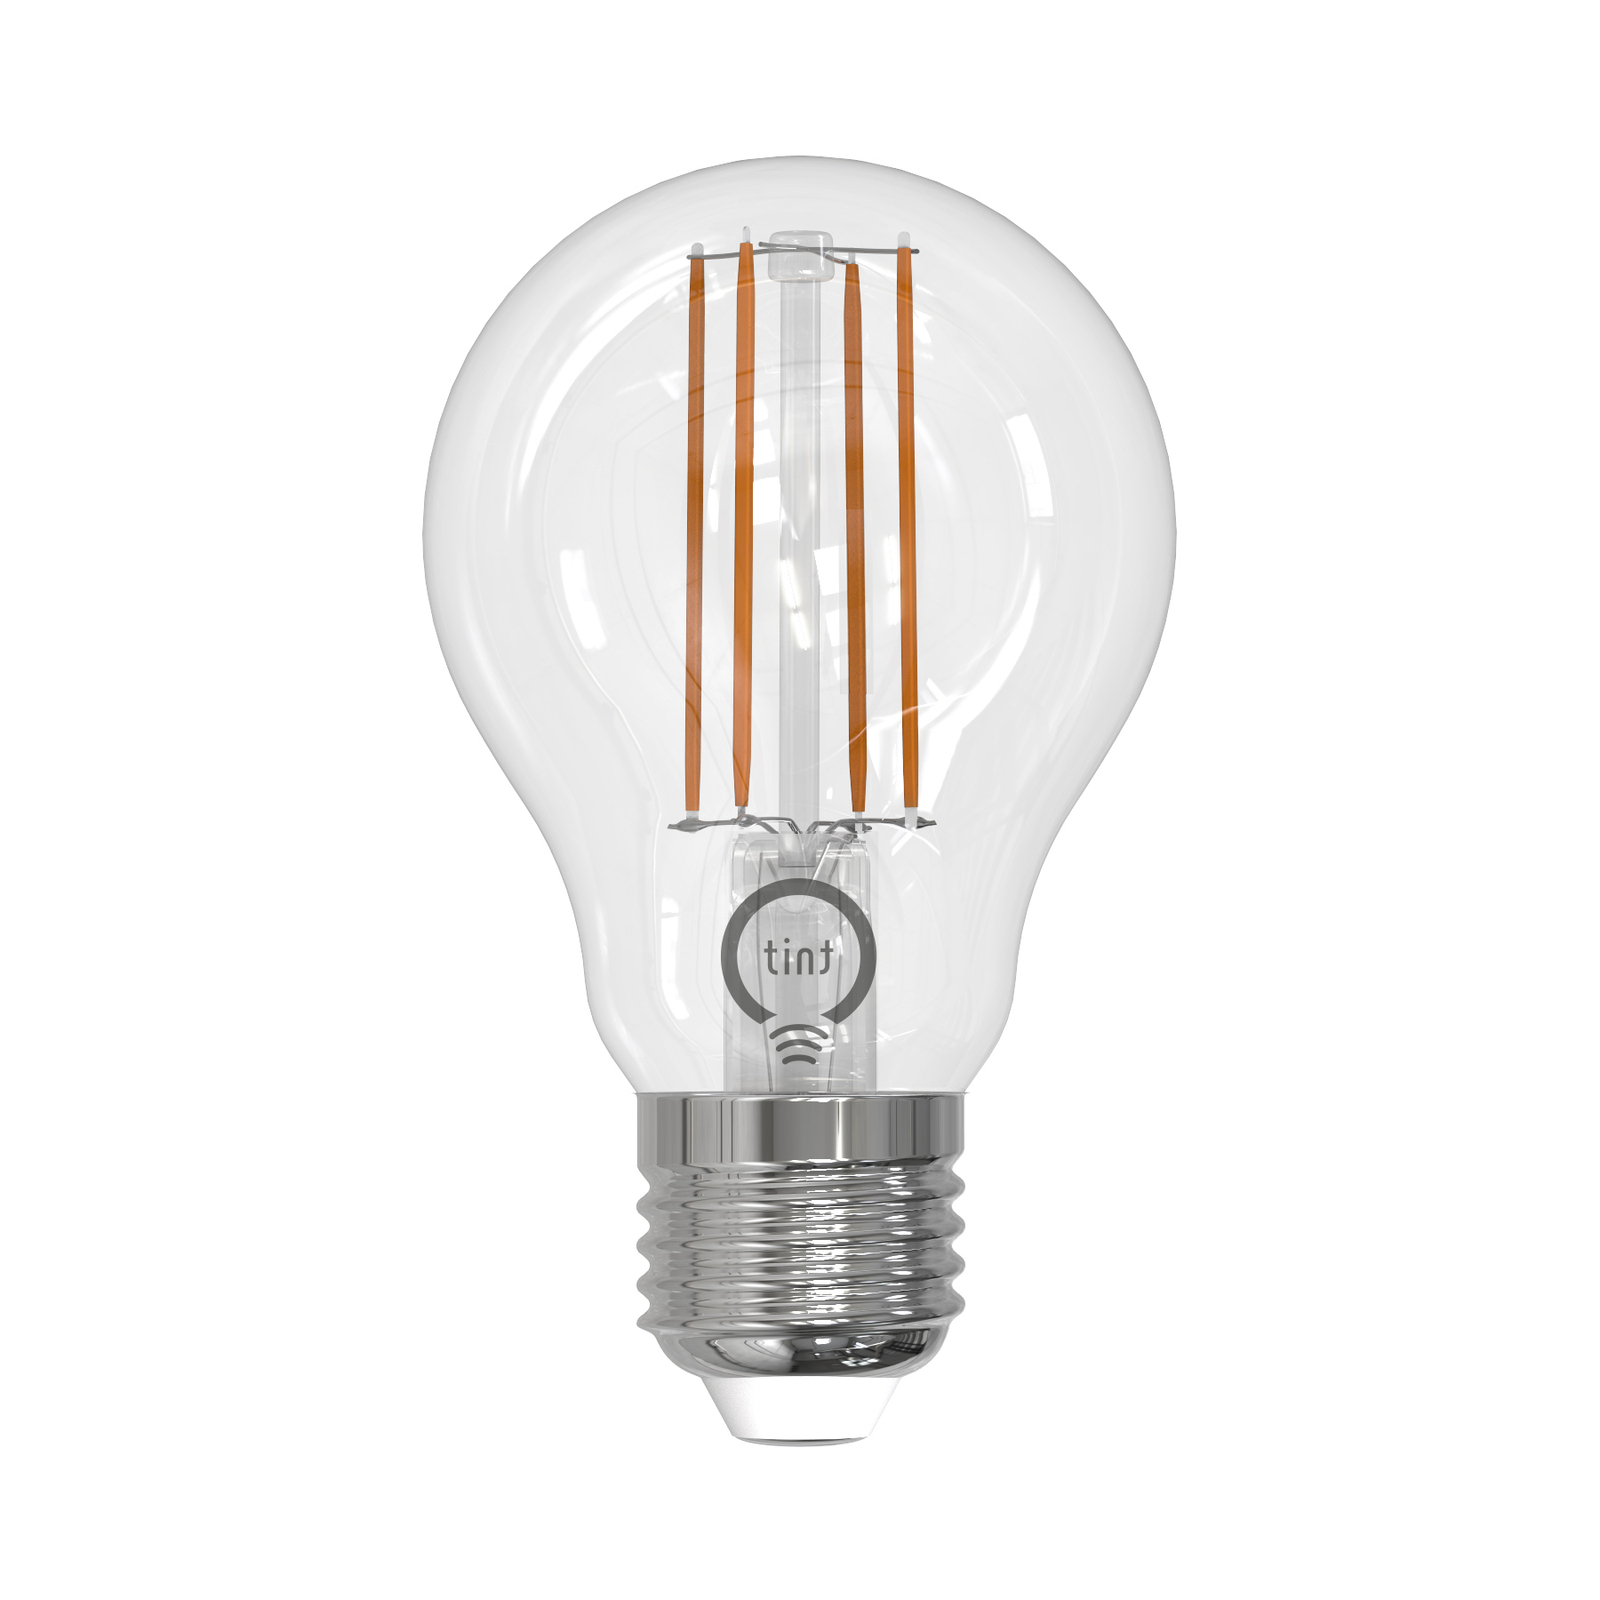 Müller Licht tint LED žárovka filament E27 7W CCT